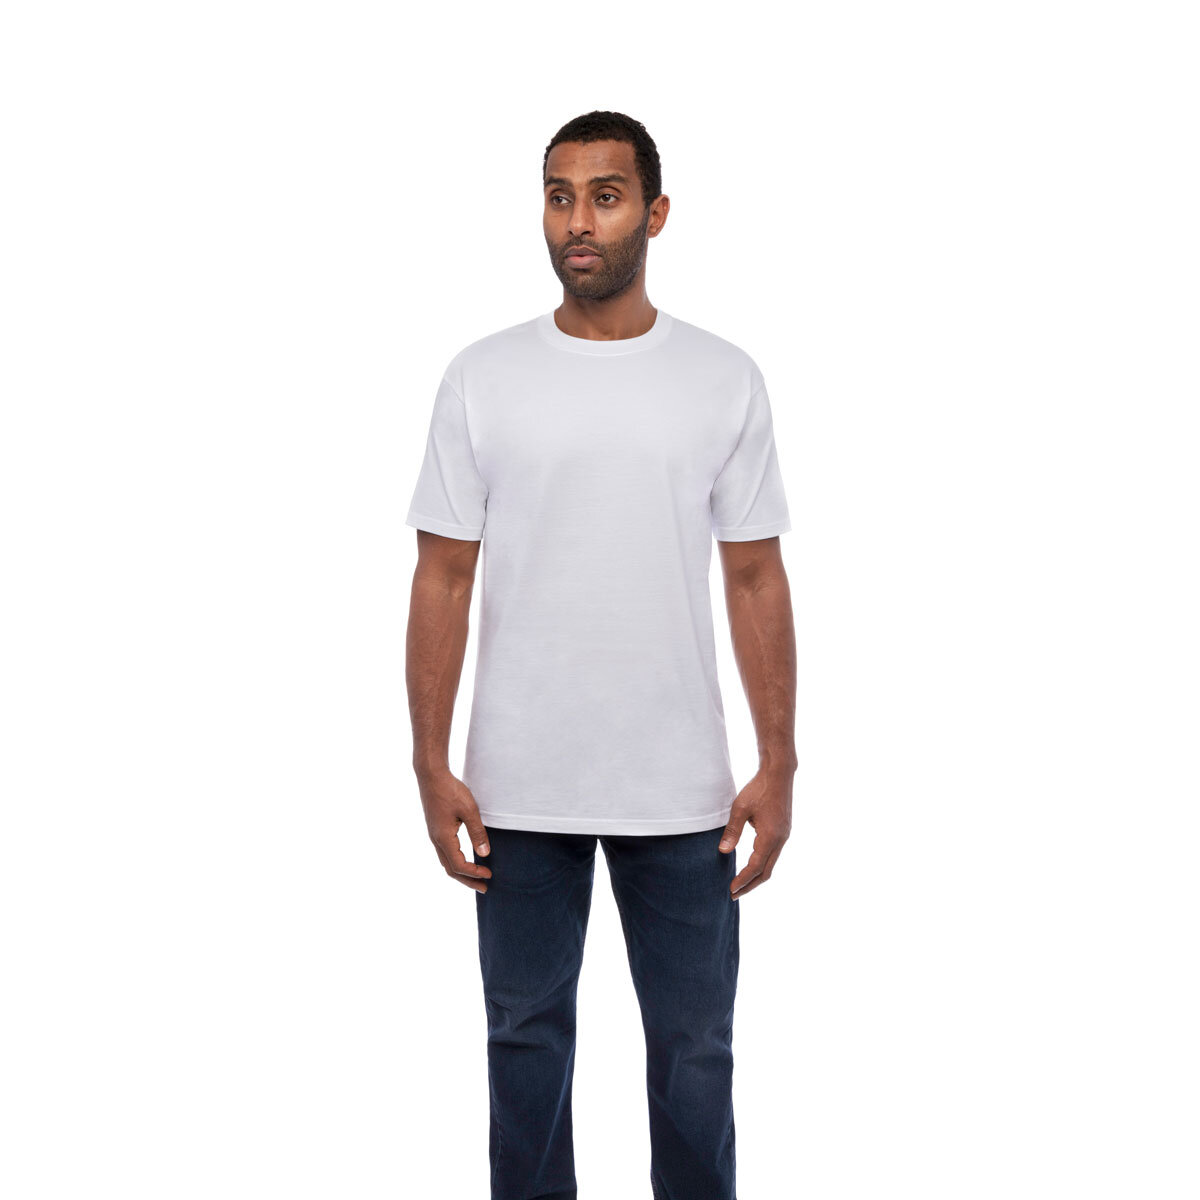 Kirkland Signature Men's Cotton Crewneck White T-Shirt, 6...